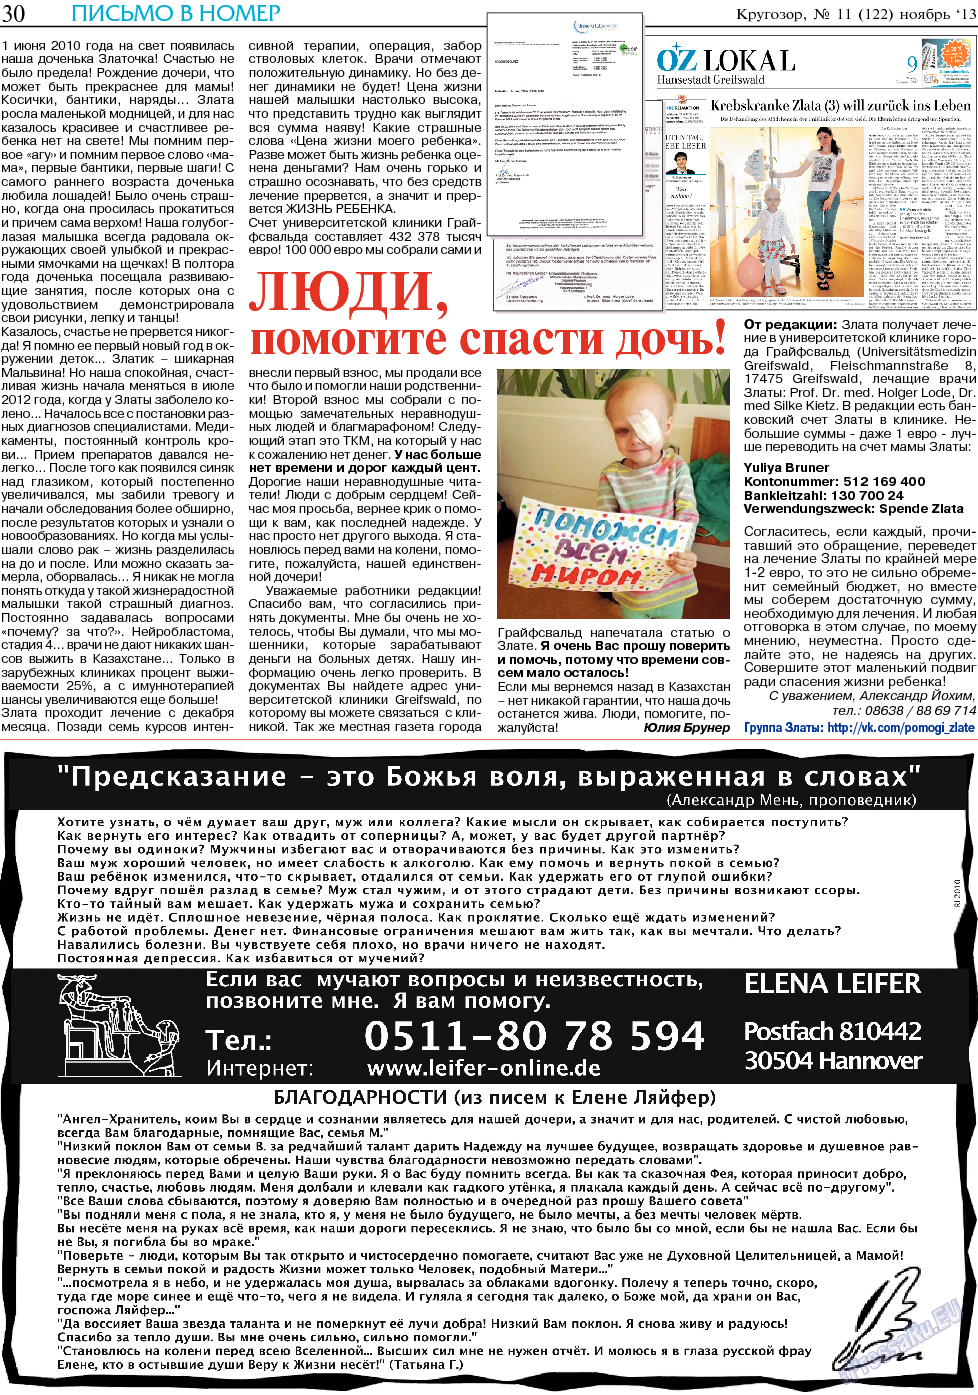 Кругозор, газета. 2013 №11 стр.30